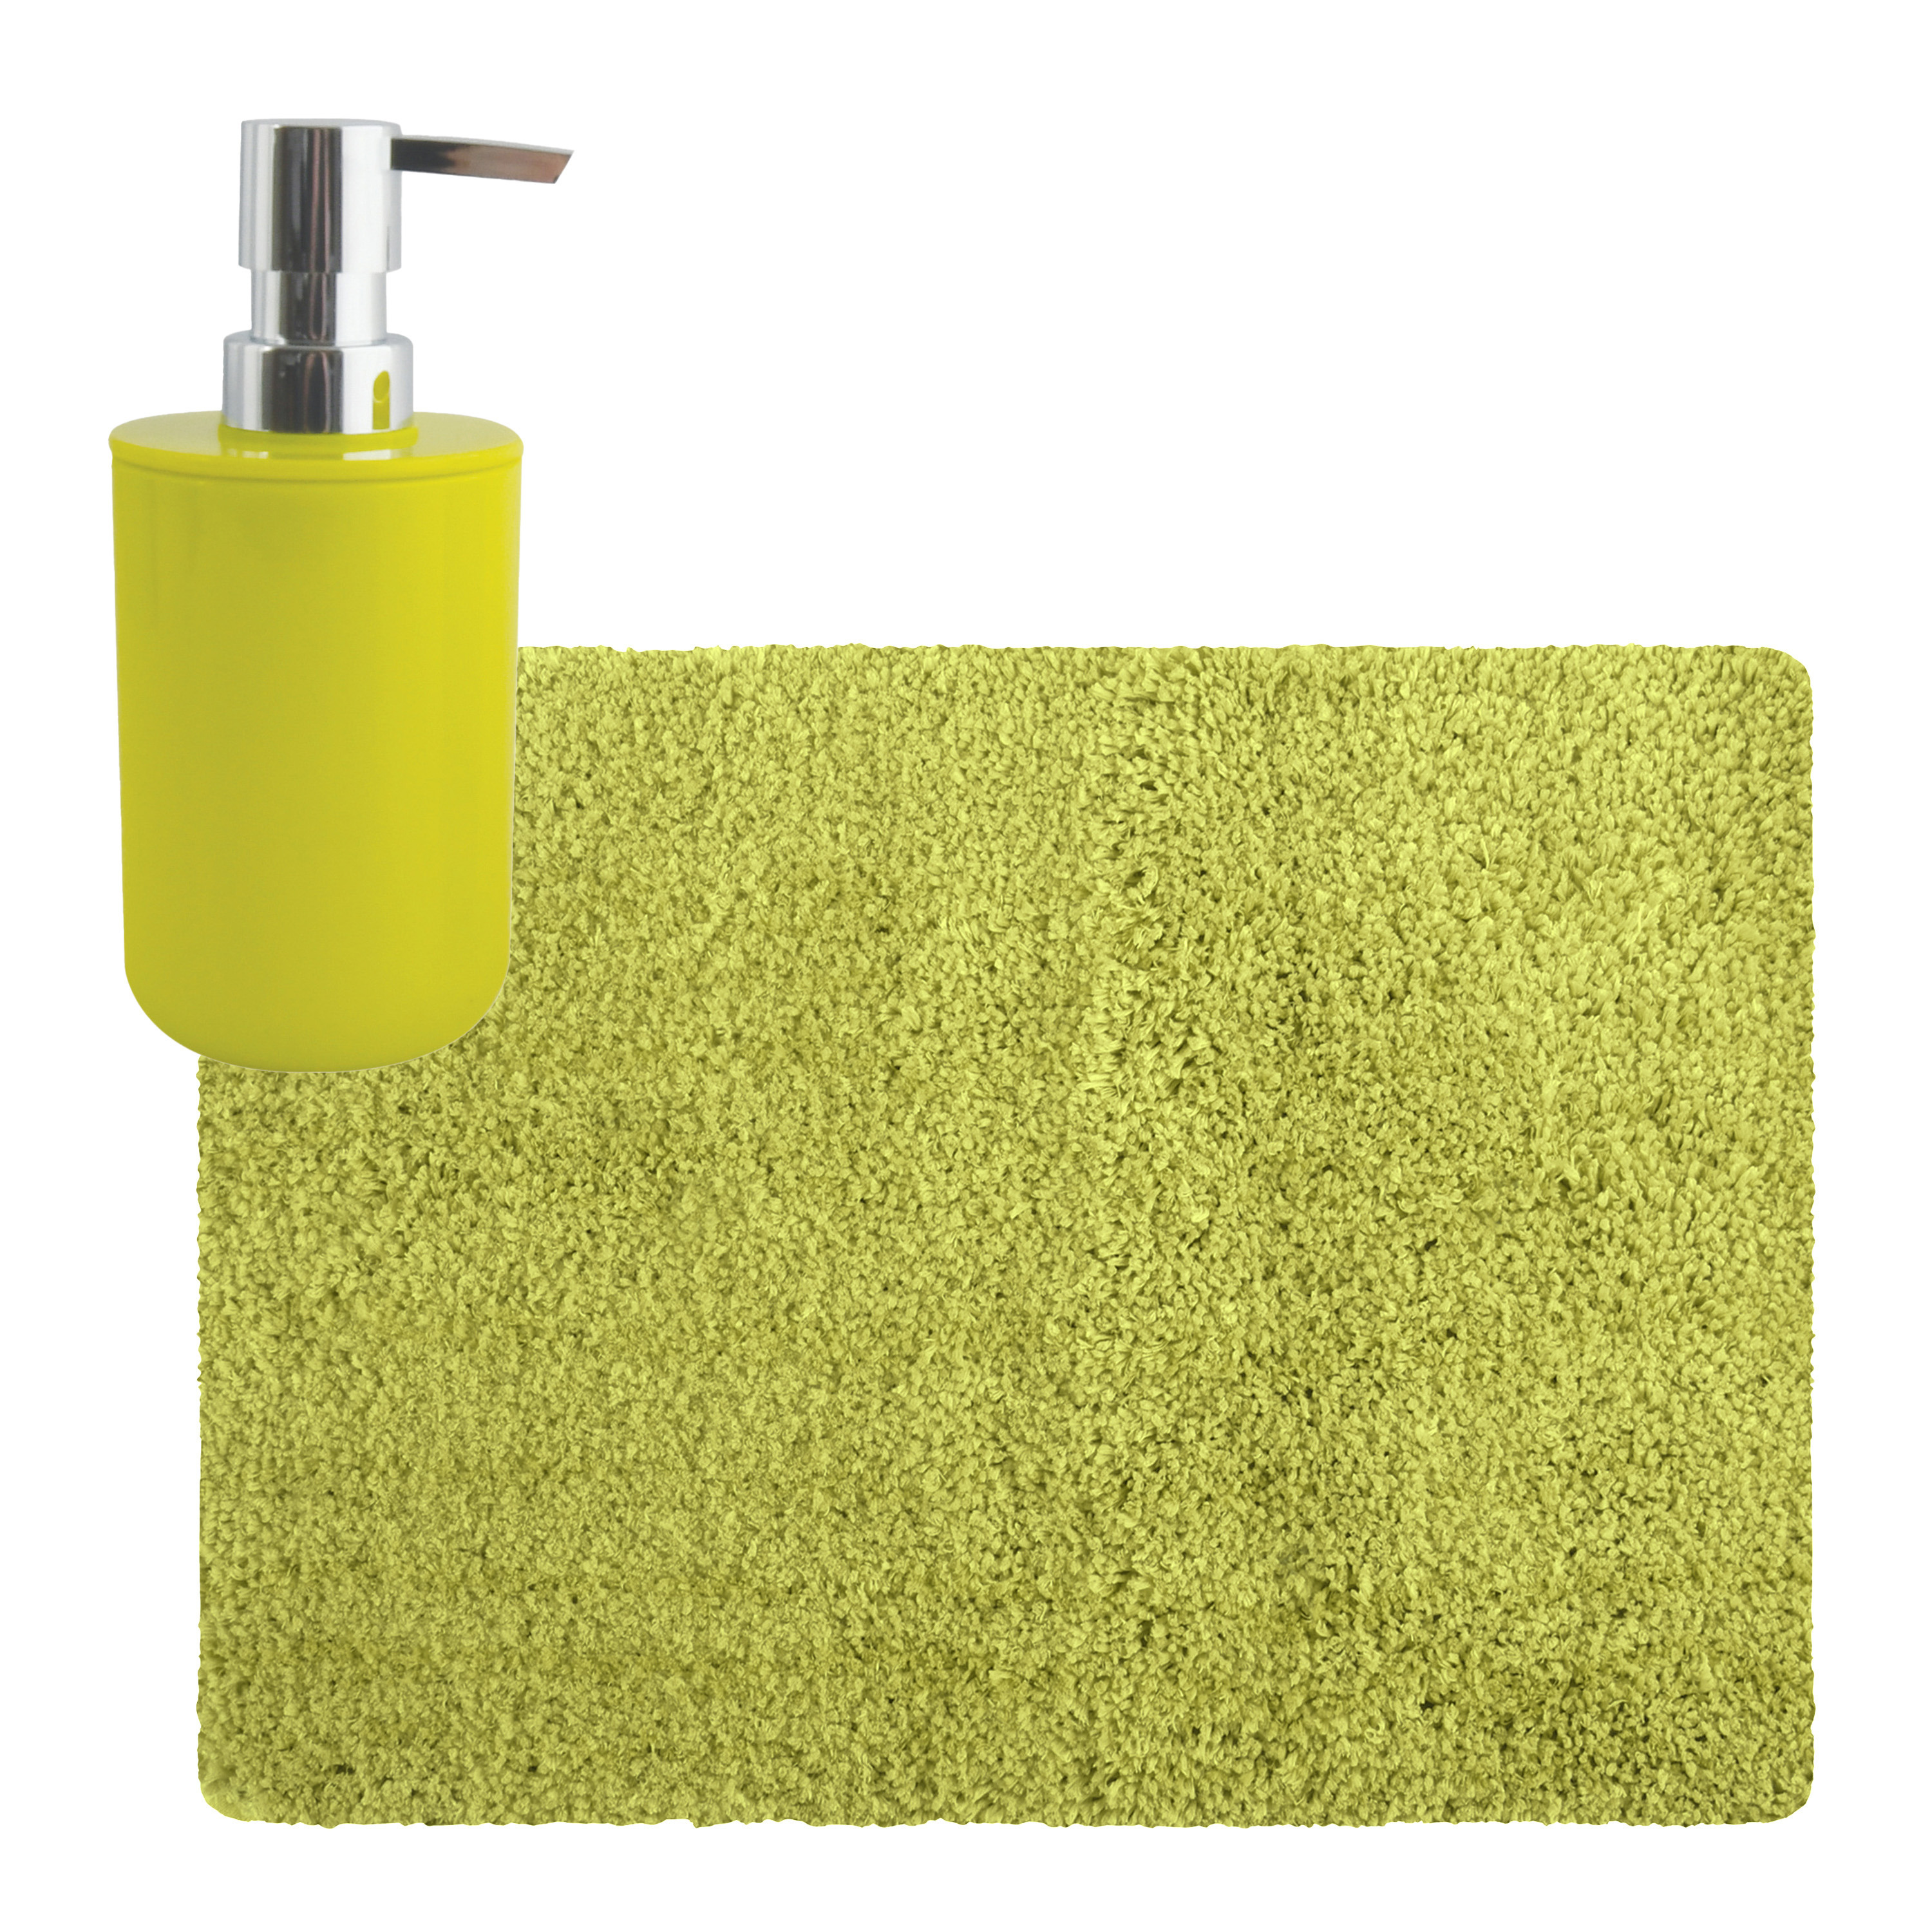 MSV badkamer droogloop tapijt Langharig 50 x 70 cm incl zeeppompje zelfde kleur lime groen